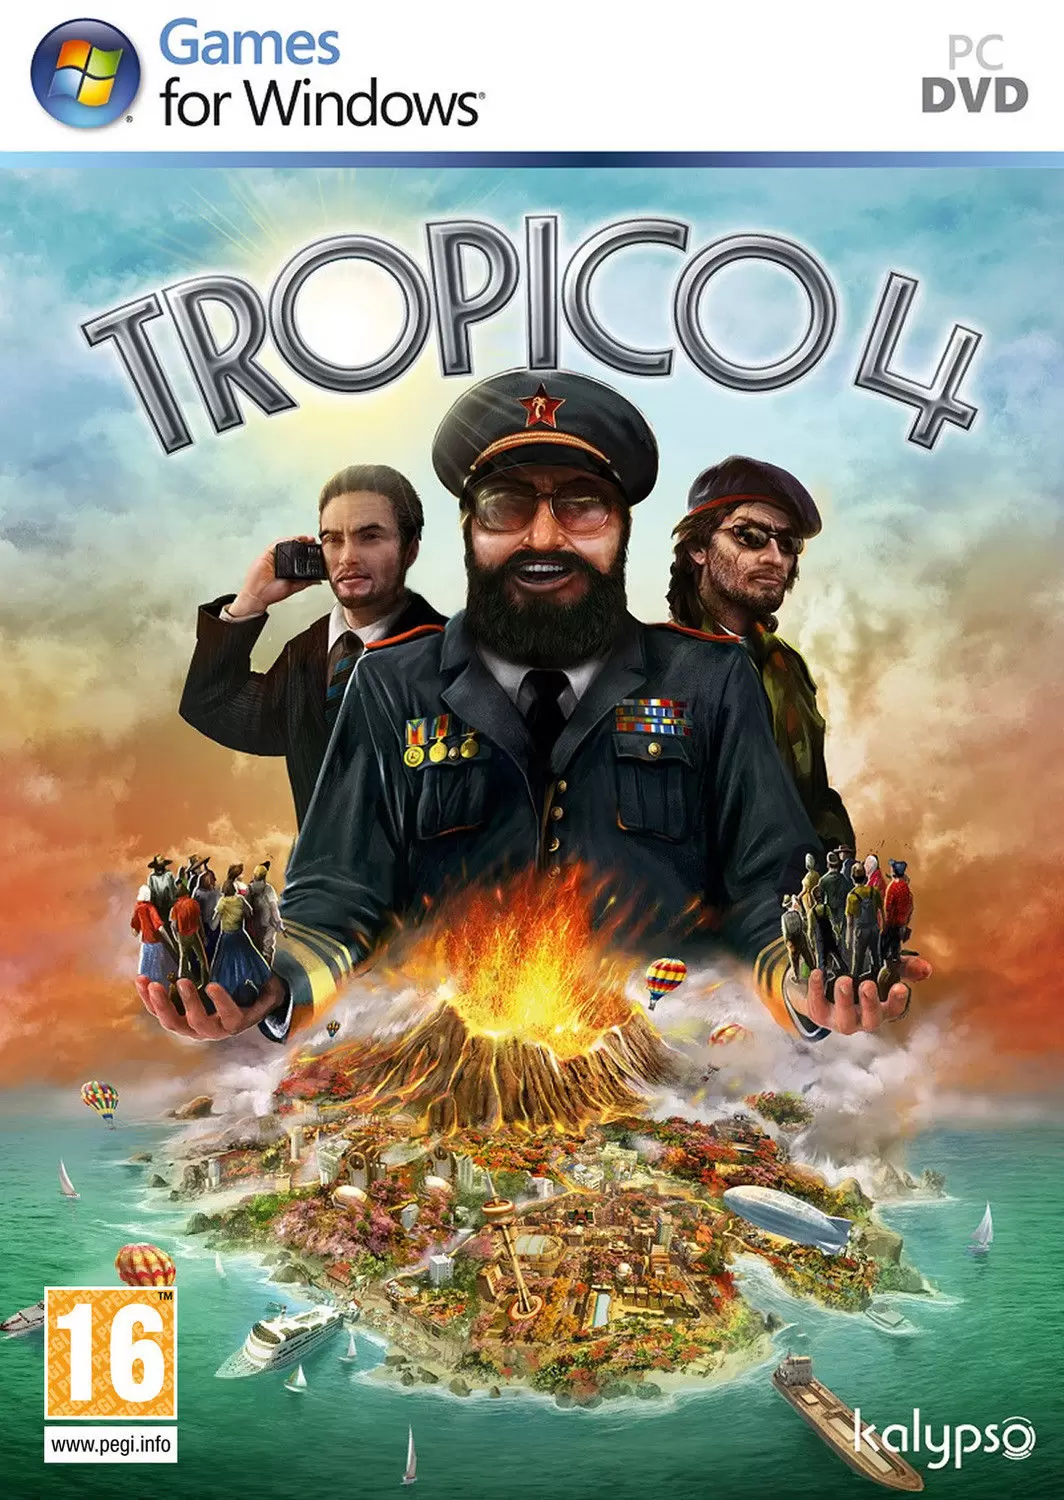 Jeux PC - Tropico 4